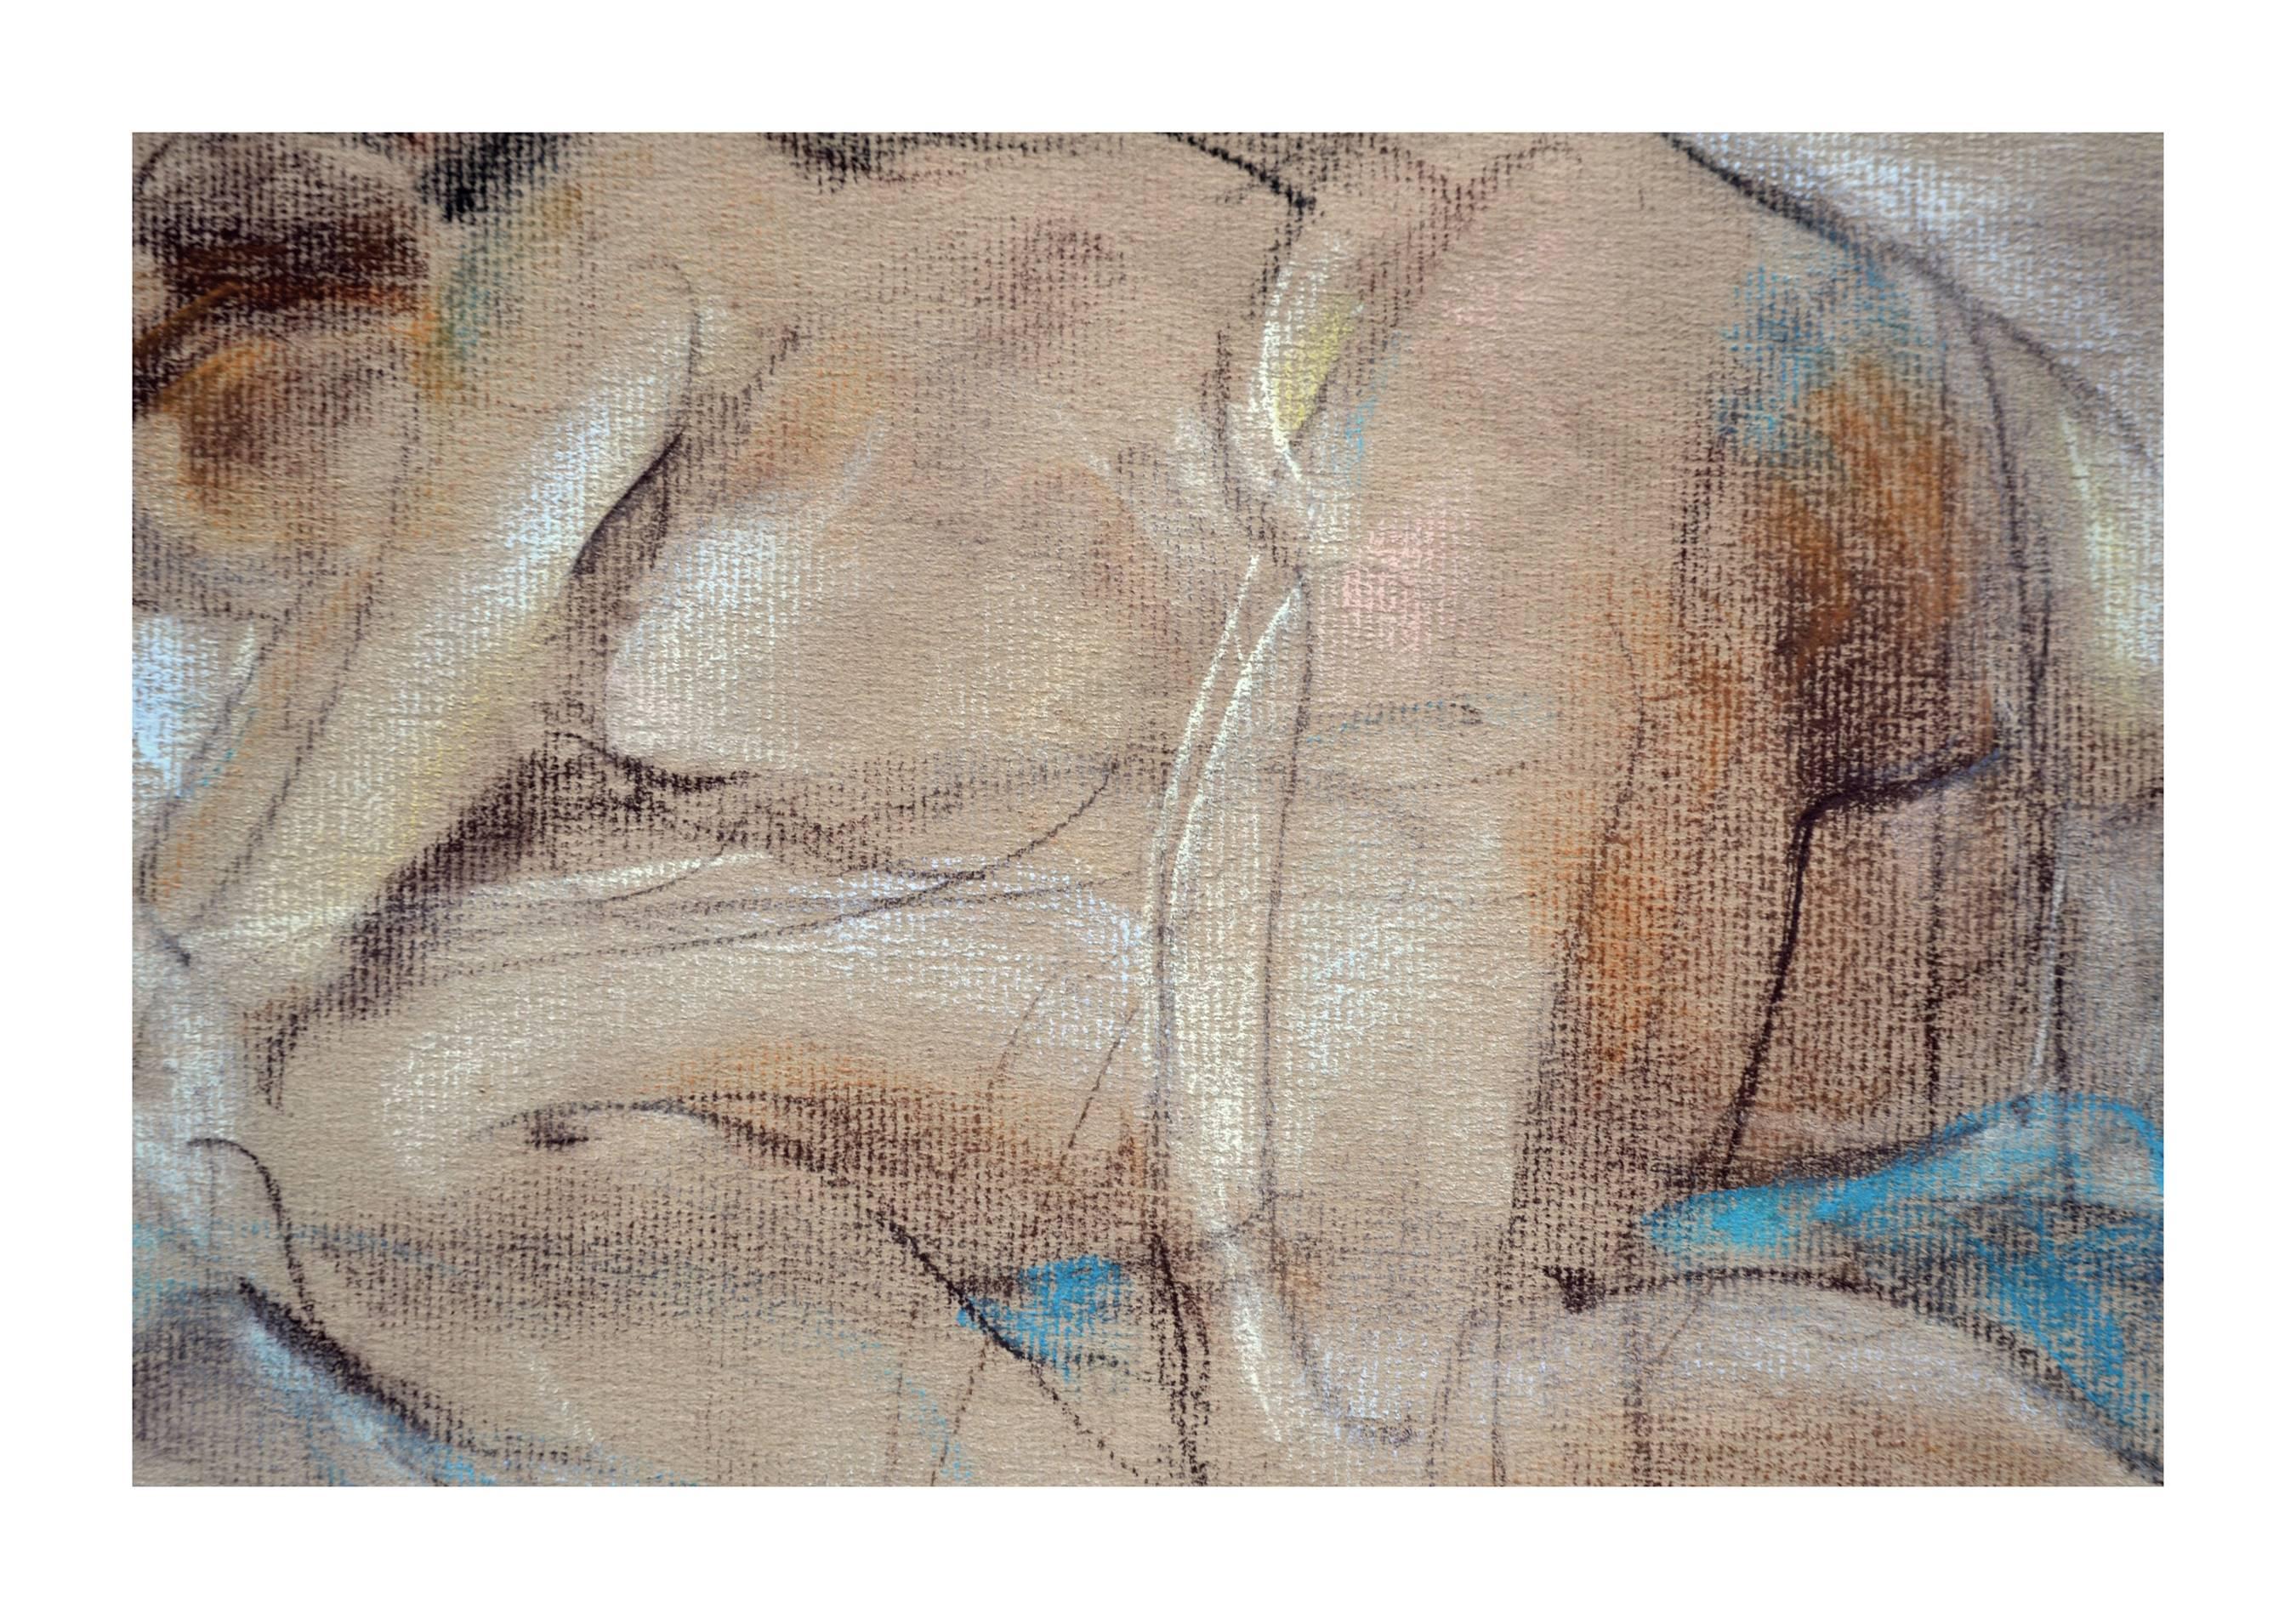 Nude Sleeping by Emil Kosa, Jr., 1930s - Brown Nude Painting by Emil Kosa Jr.